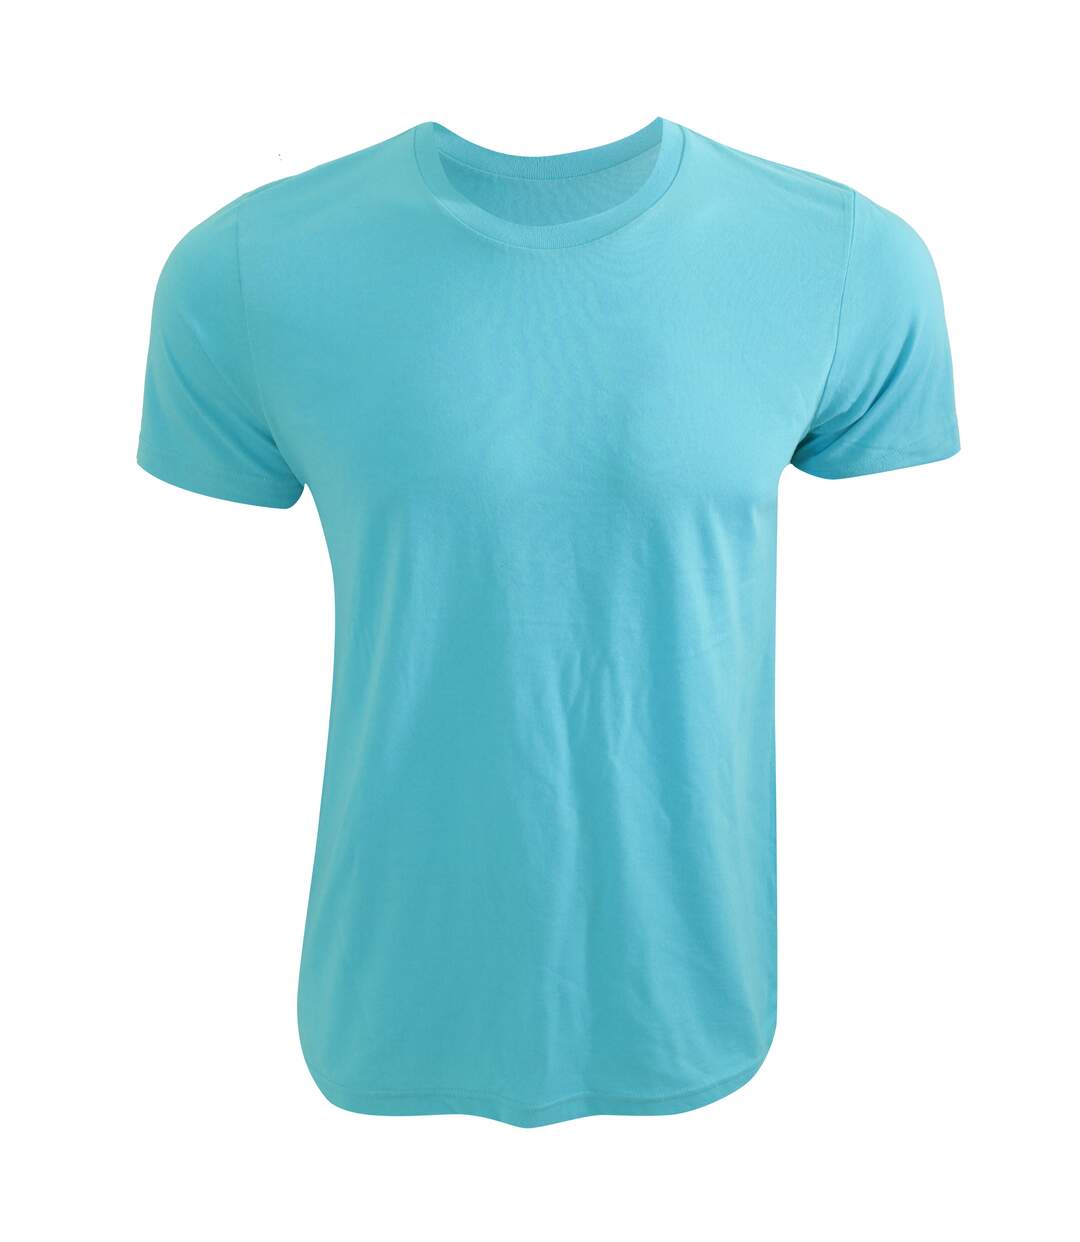 Canvas - T-shirt à manches courtes - Adulte unisexe (Bleu fluo) - UTBC3167